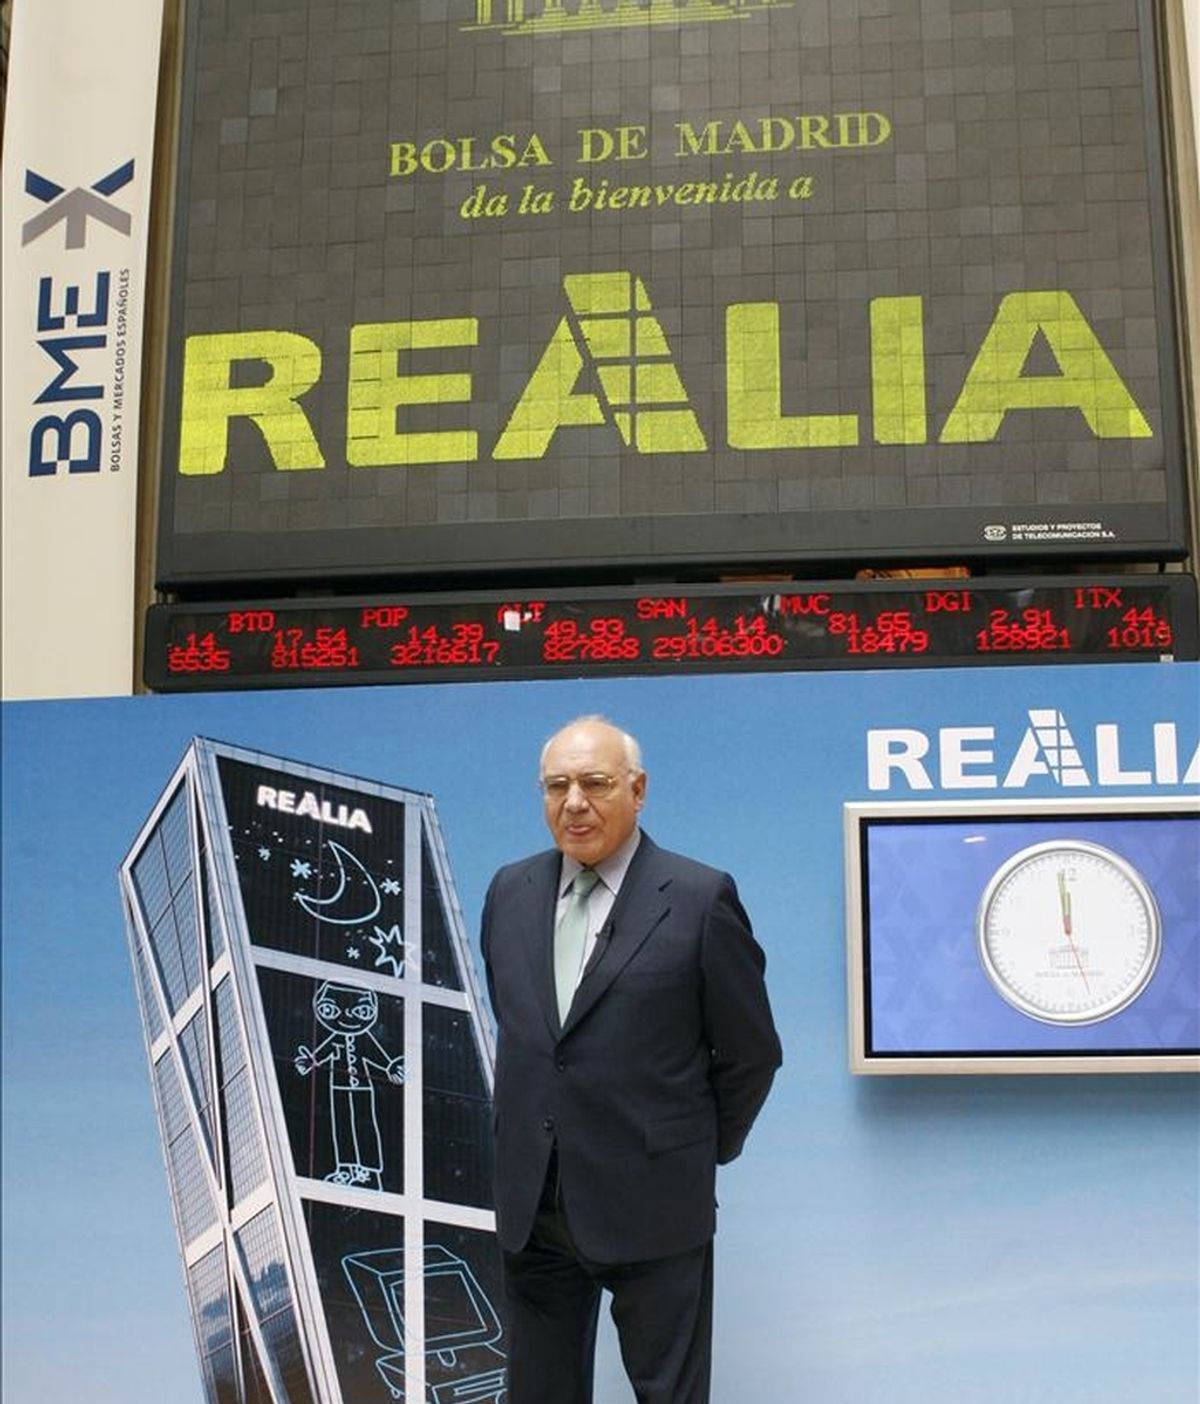 El presidente de Realia, Ignacio Bayón, posó para los medios de comunicación, tras el tradicional toque de campana virtual en la Bolsa de Madrid. EFE/Archivo